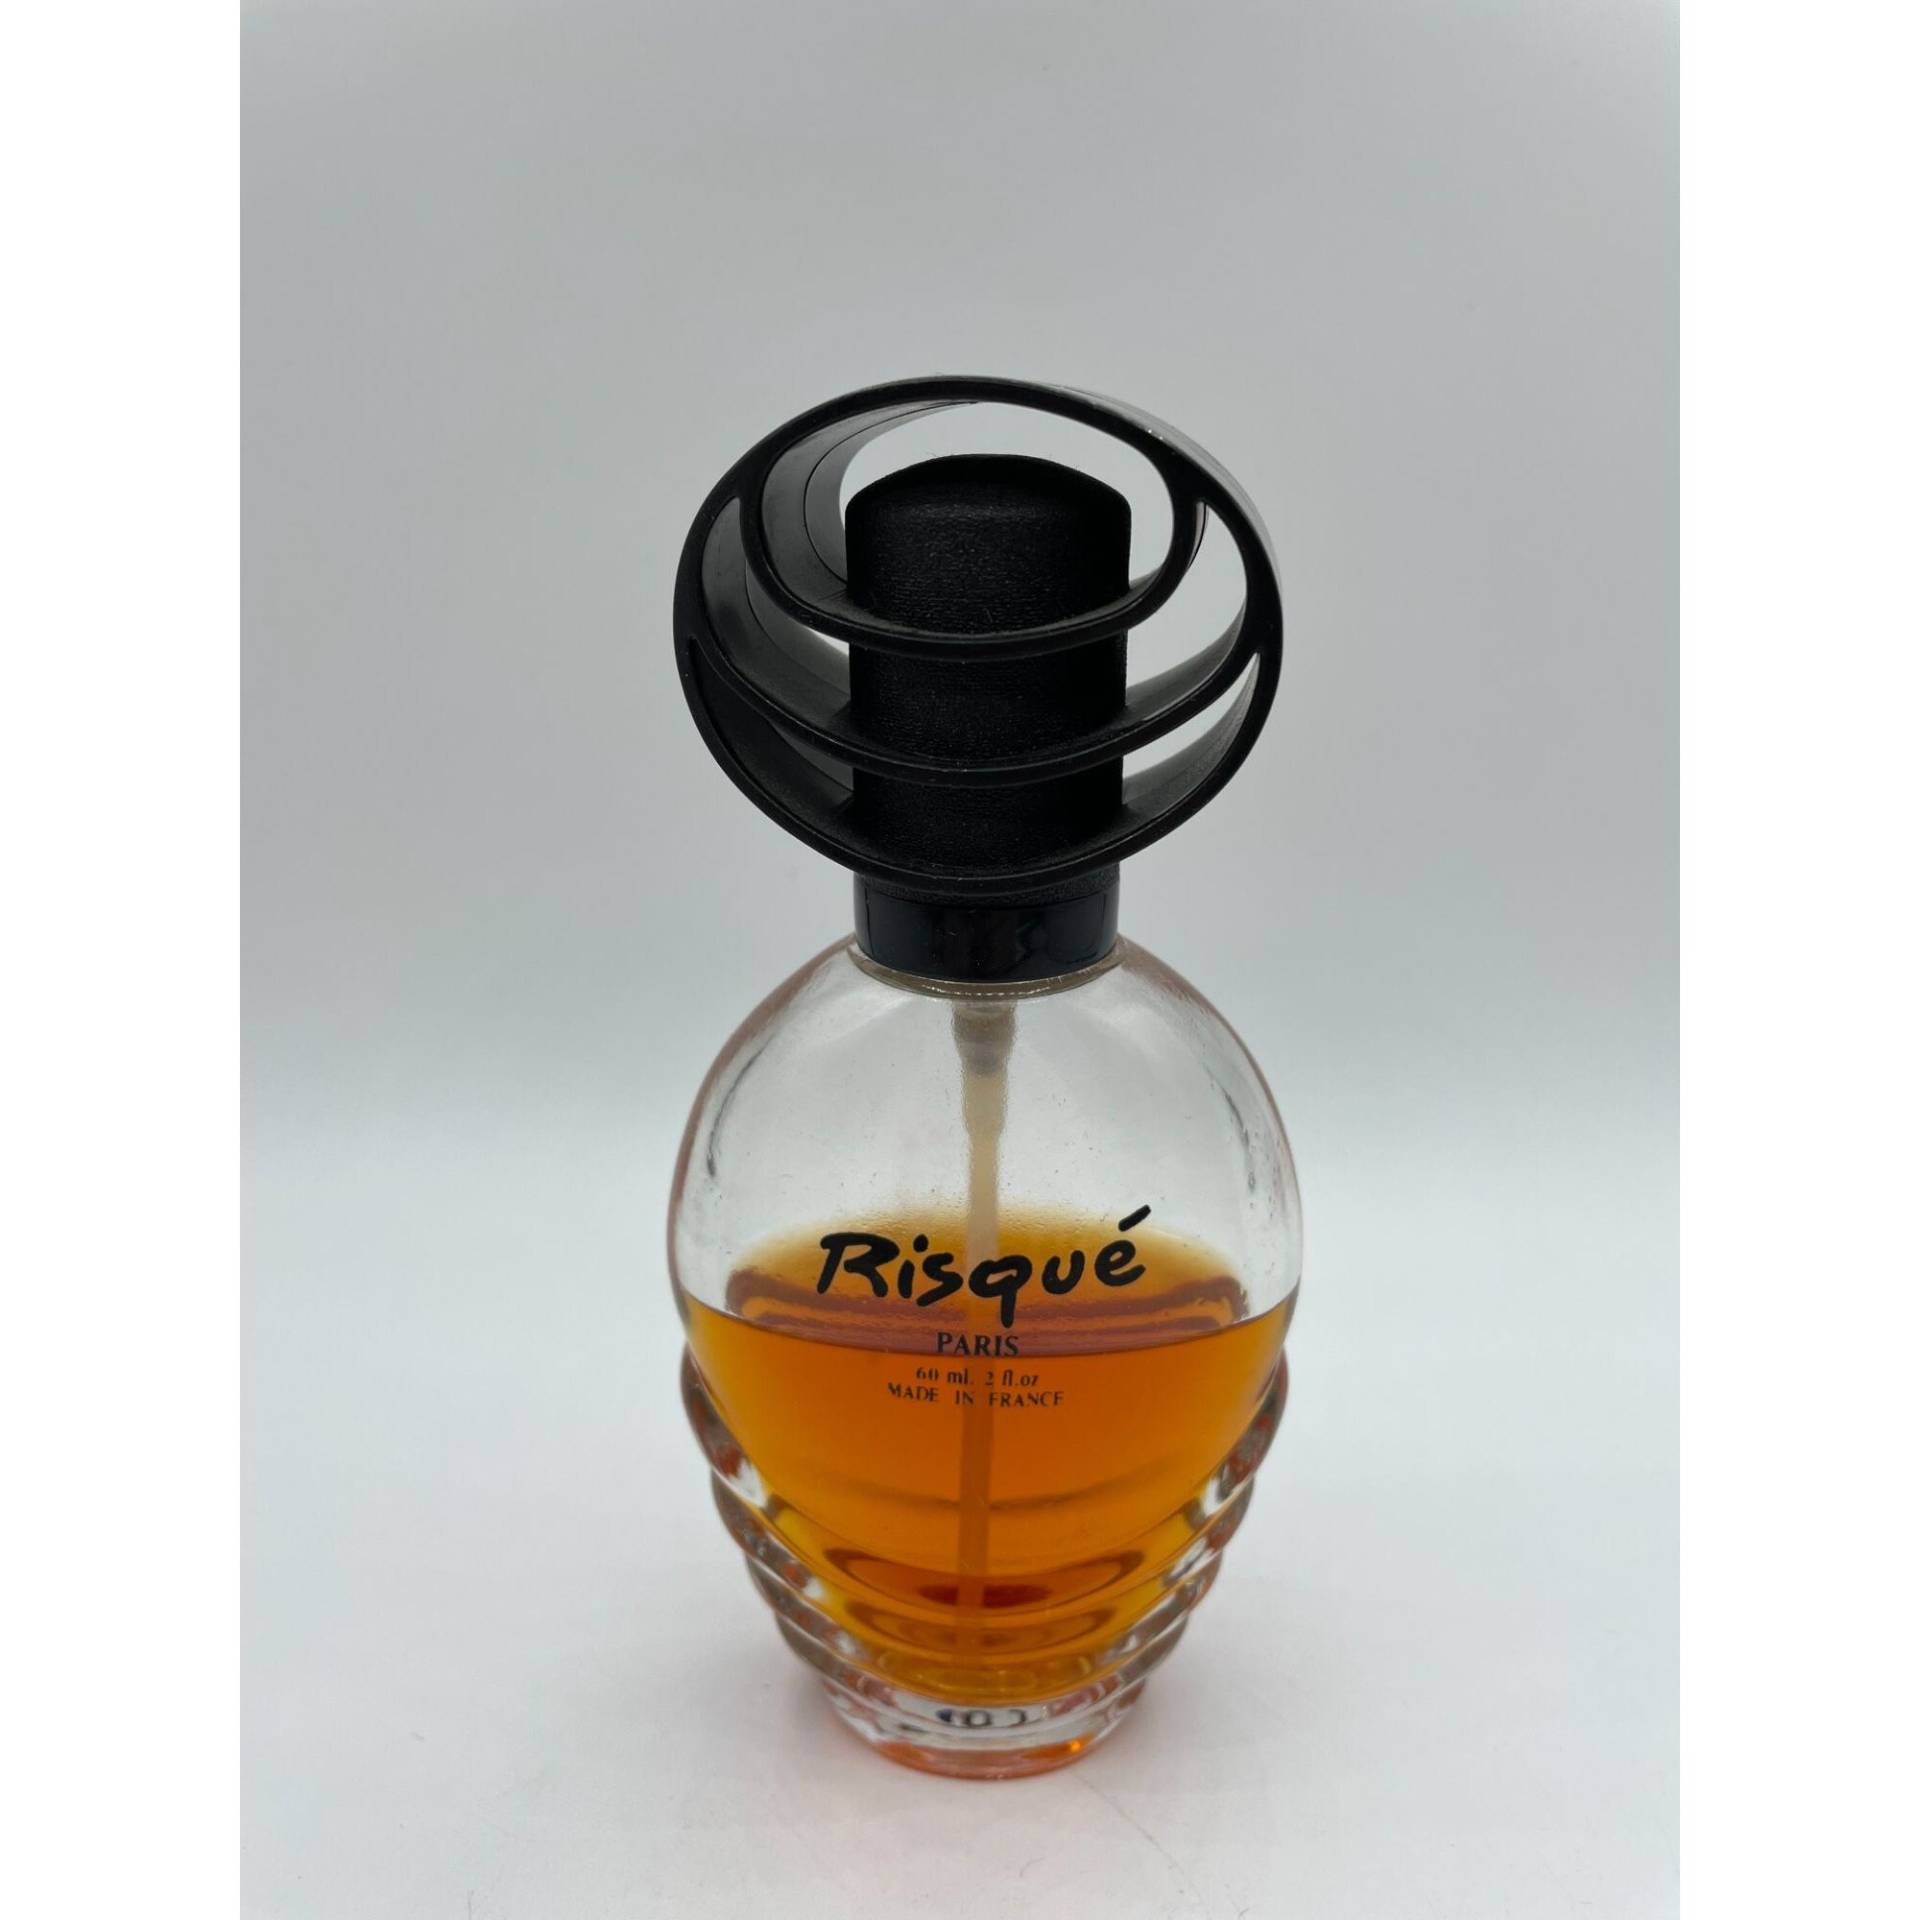 Vintage Risque Parfüm Köln Spray Paris Frankreich 60 Ml/2 Oz 50% Voll von ColleensCloseouts